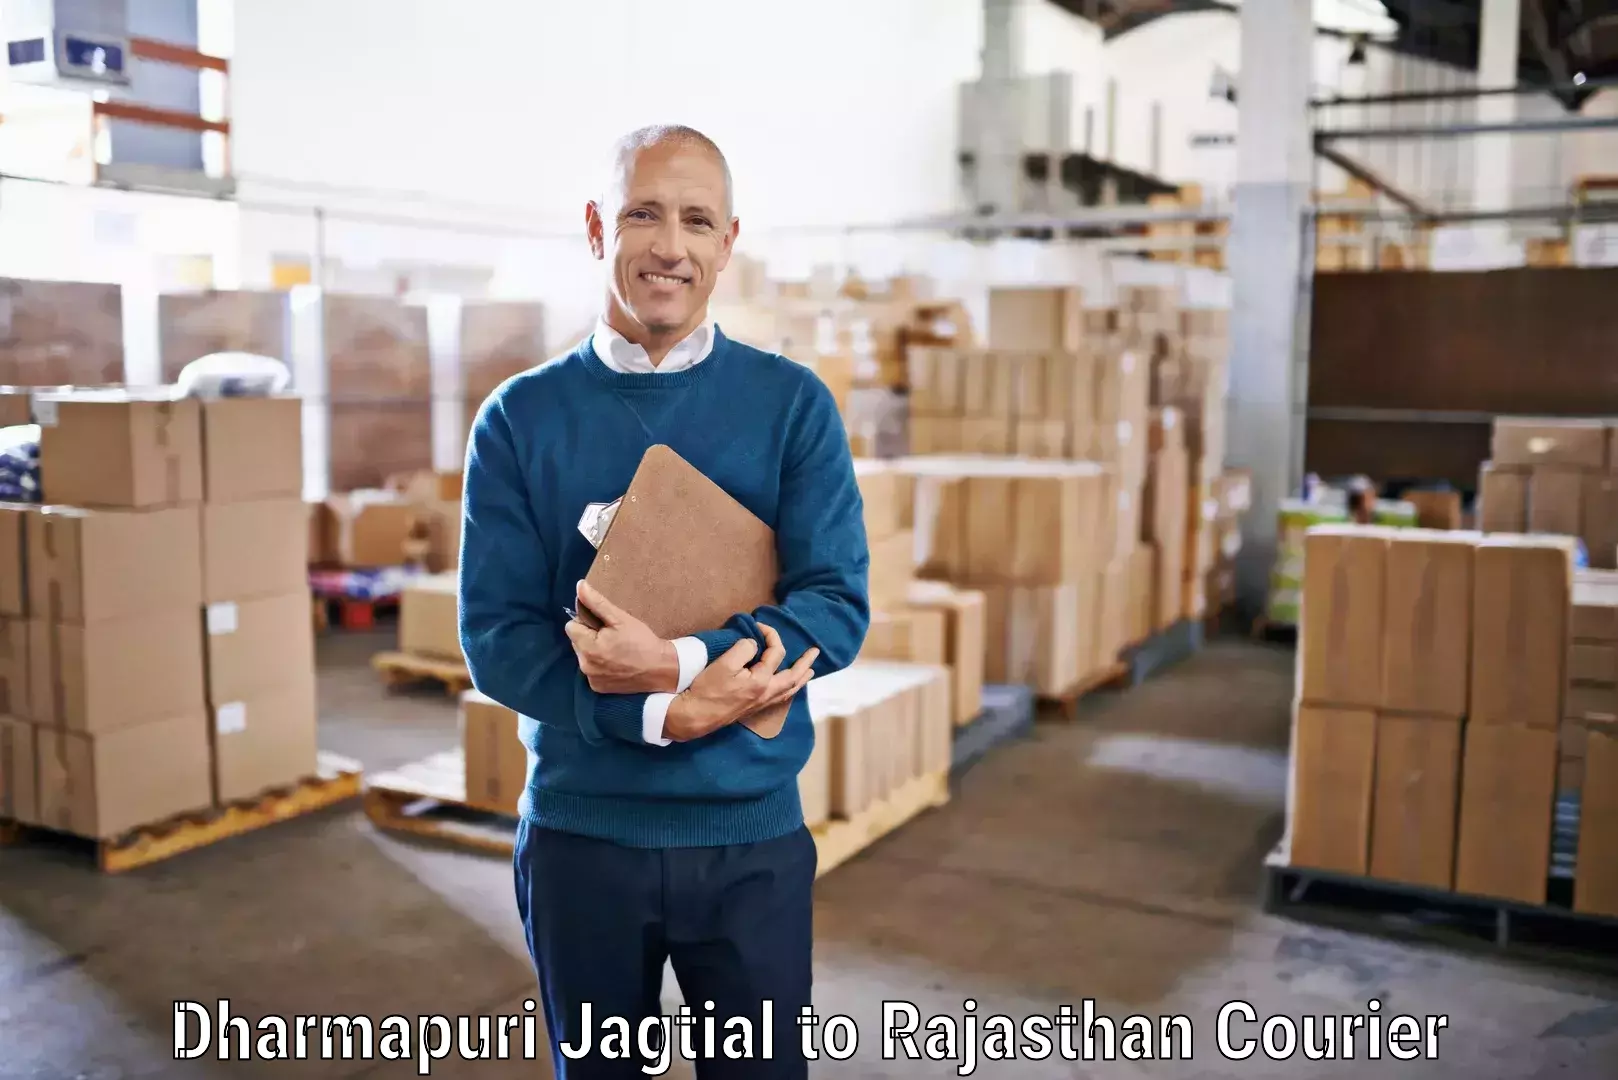 Courier service efficiency Dharmapuri Jagtial to Sambhar